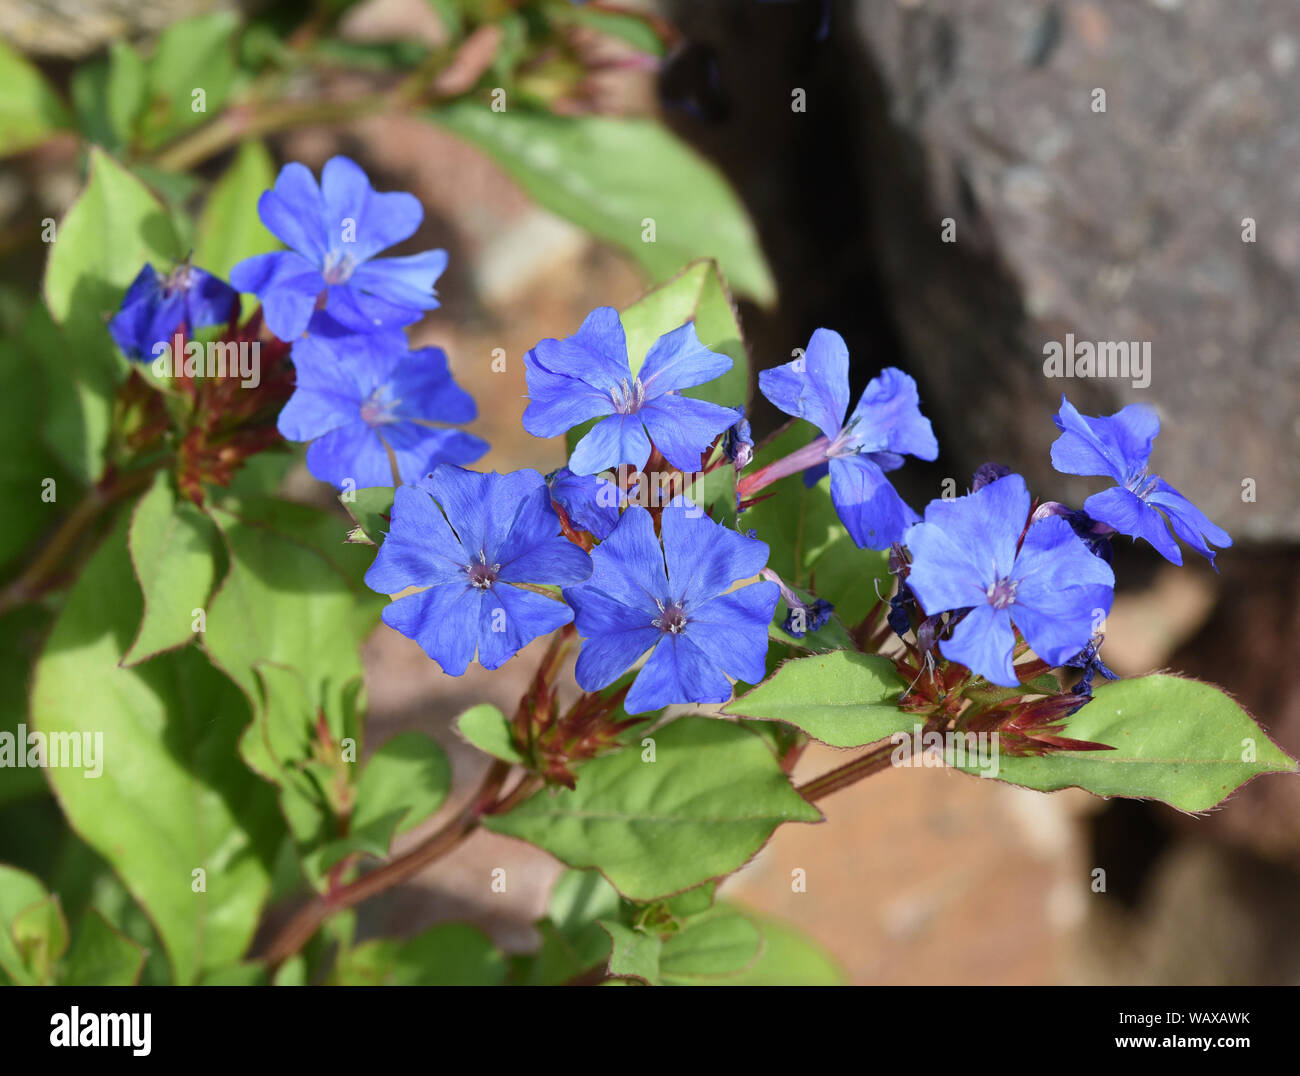 Bleiwurz, Cerastostigma, Wiimottiana ist eine wichtige Heilpflanze und eine Blume mit blauen Blueten. Leadwort, Cerastostigma, Wiimottiana is an impor Stock Photo